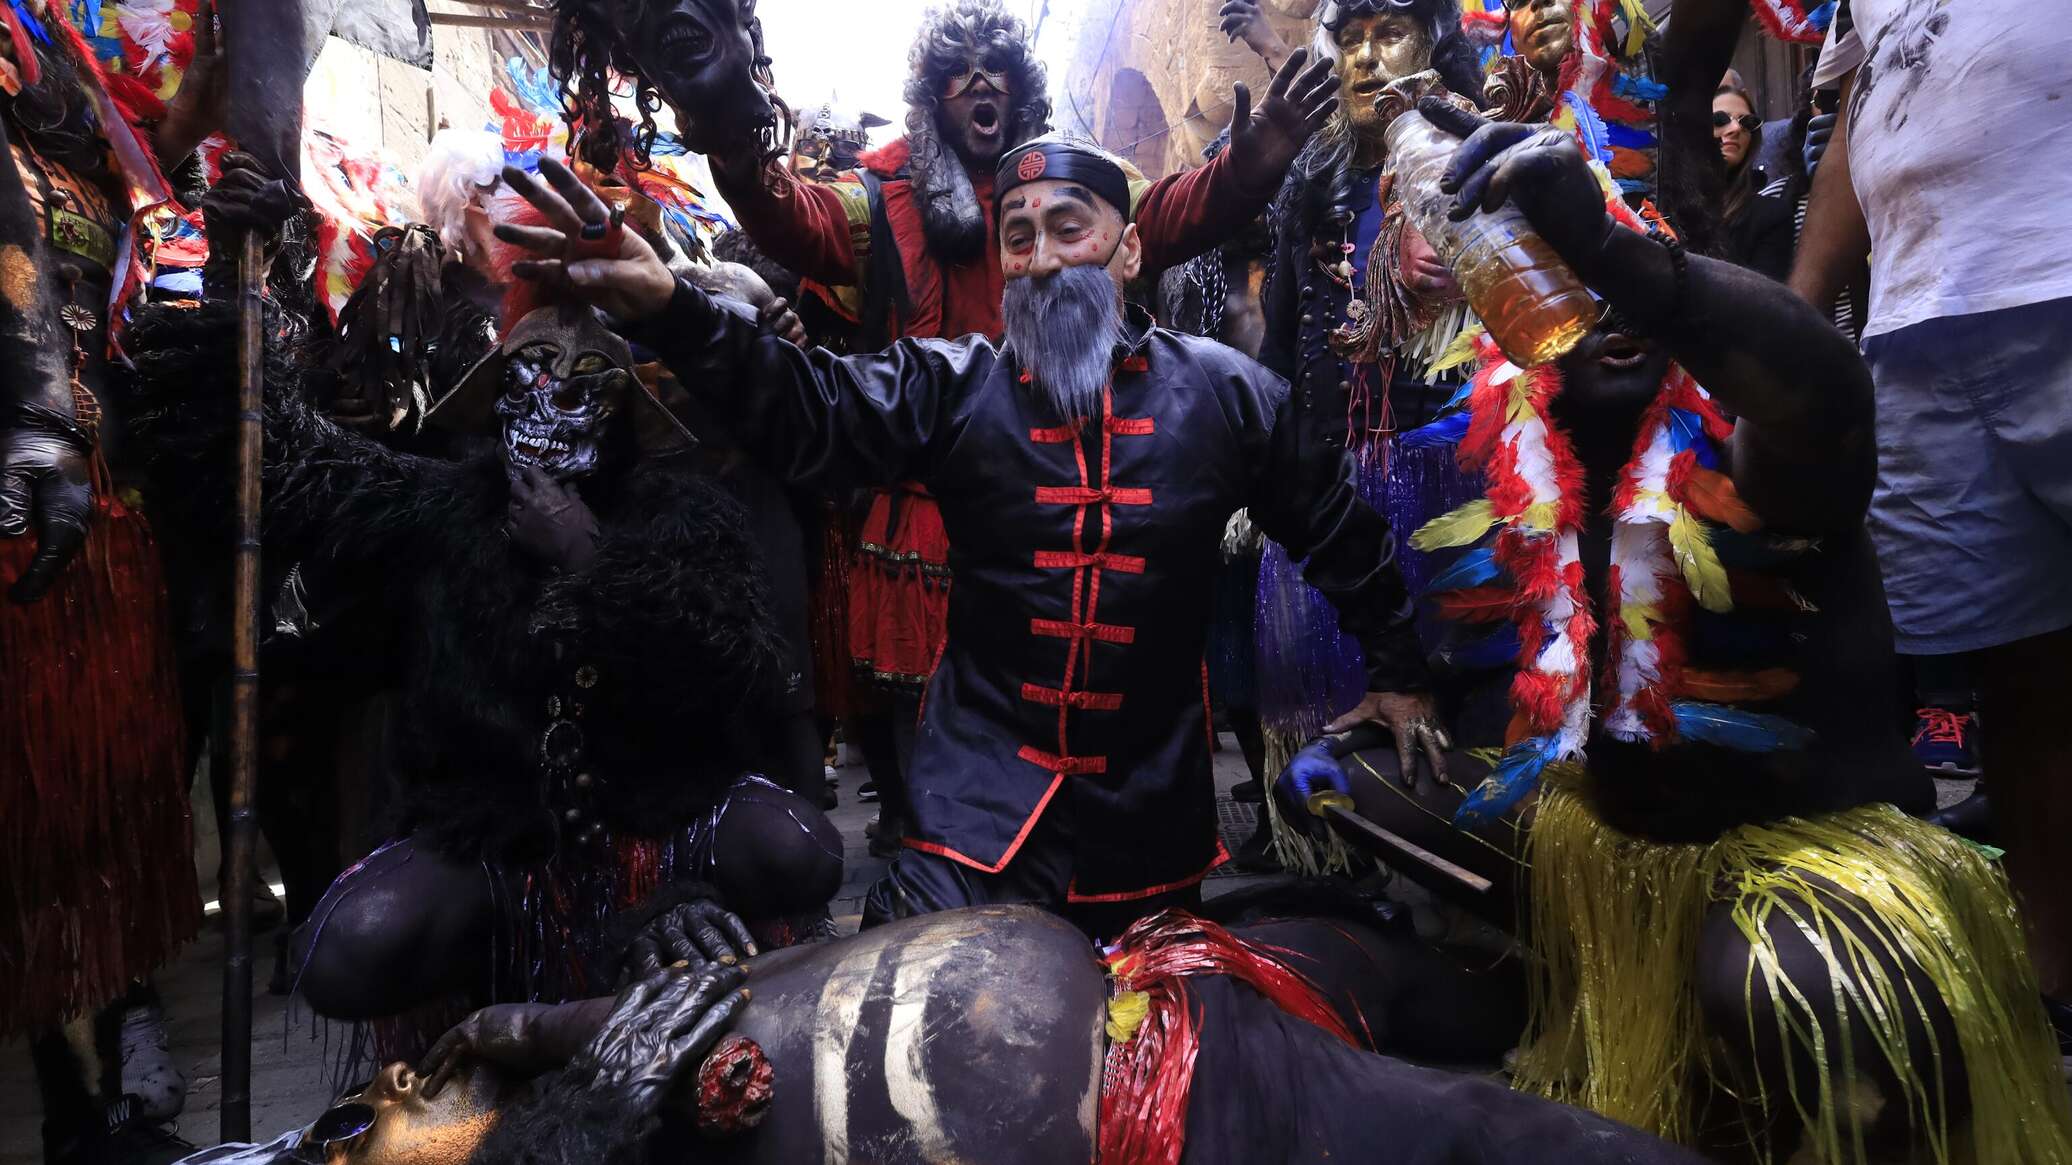 "مهرجان الزامبو" تقليد غريب قبل الصوم عند الطوائف المسيحية الشرقية.. فيديو وصور